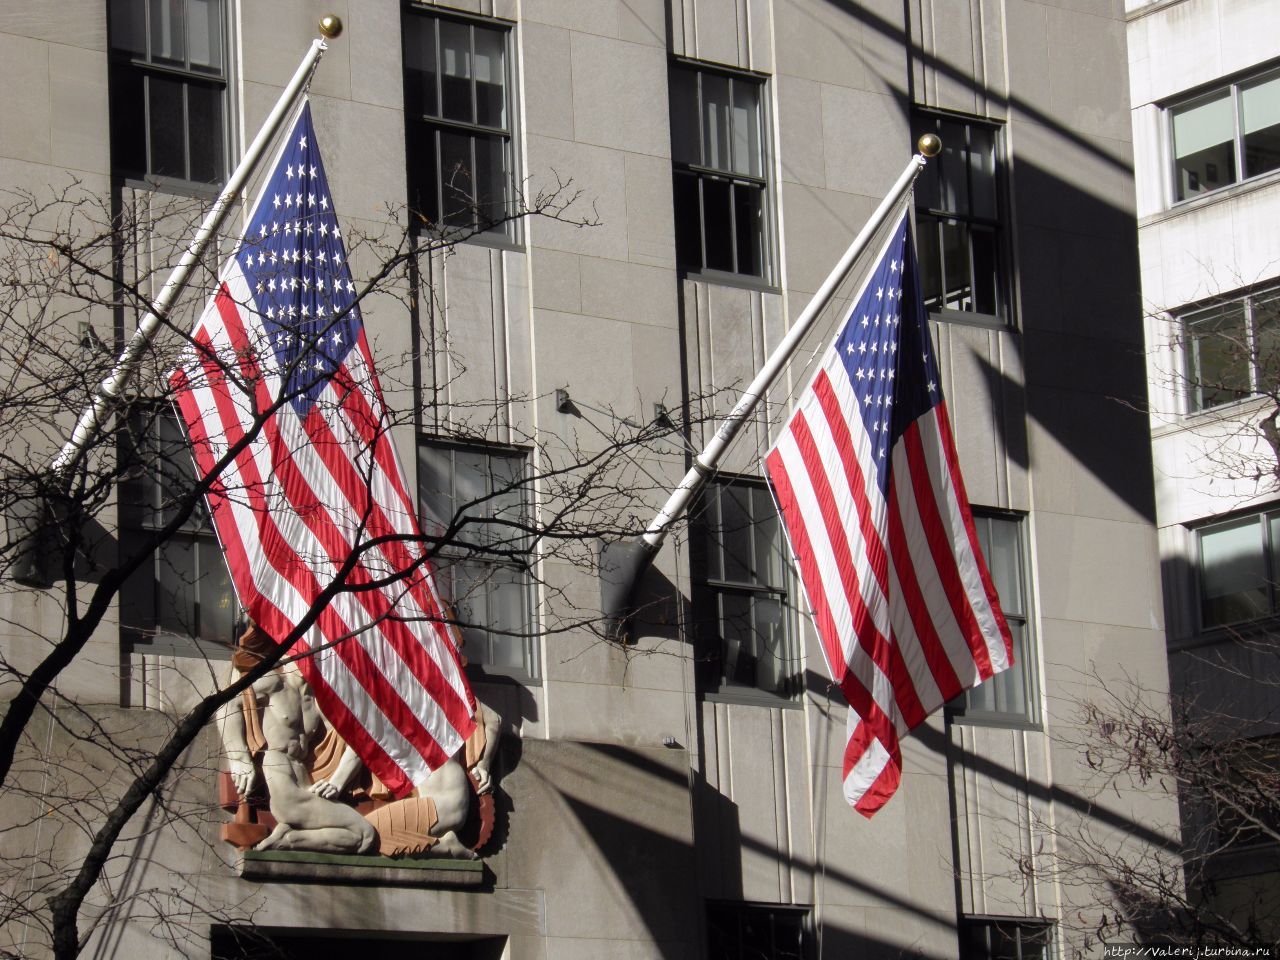 Обилие национальных флагов, совсем не напрягает, а даже вызывает уважение Нью-Йорк, CША